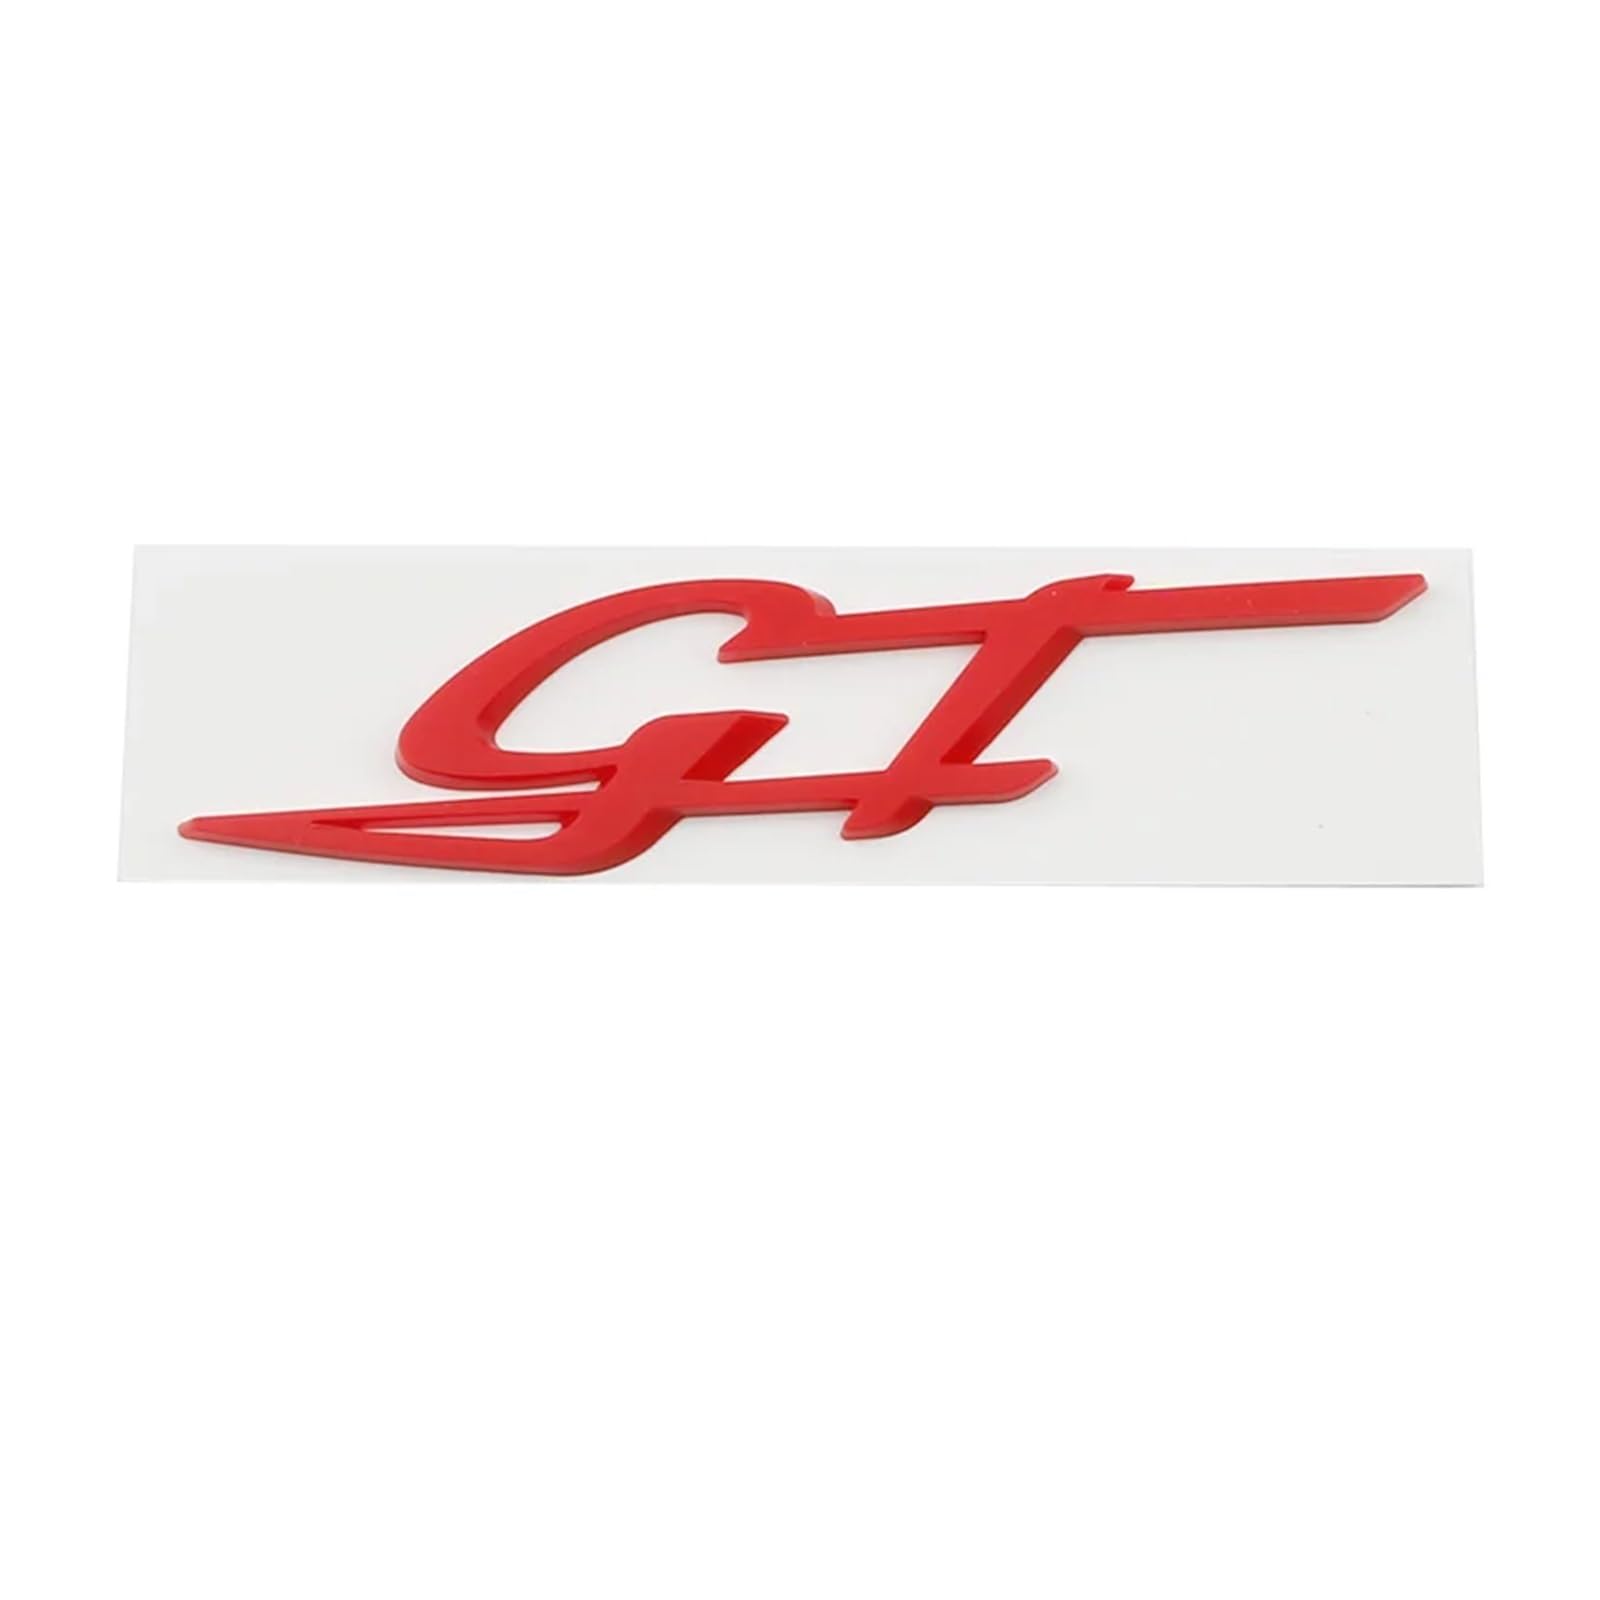 AQXYWQOL Auto 3D Metall GT Logo Abzeichen Emblem Aufkleber Aufkleber Kompatibel mit Levante Quattroporte Ghibli Modena GT MC20 Styling Zubehör Farbe ist konstant, verblasst nicht und beschädigt(Red) von AQXYWQOL